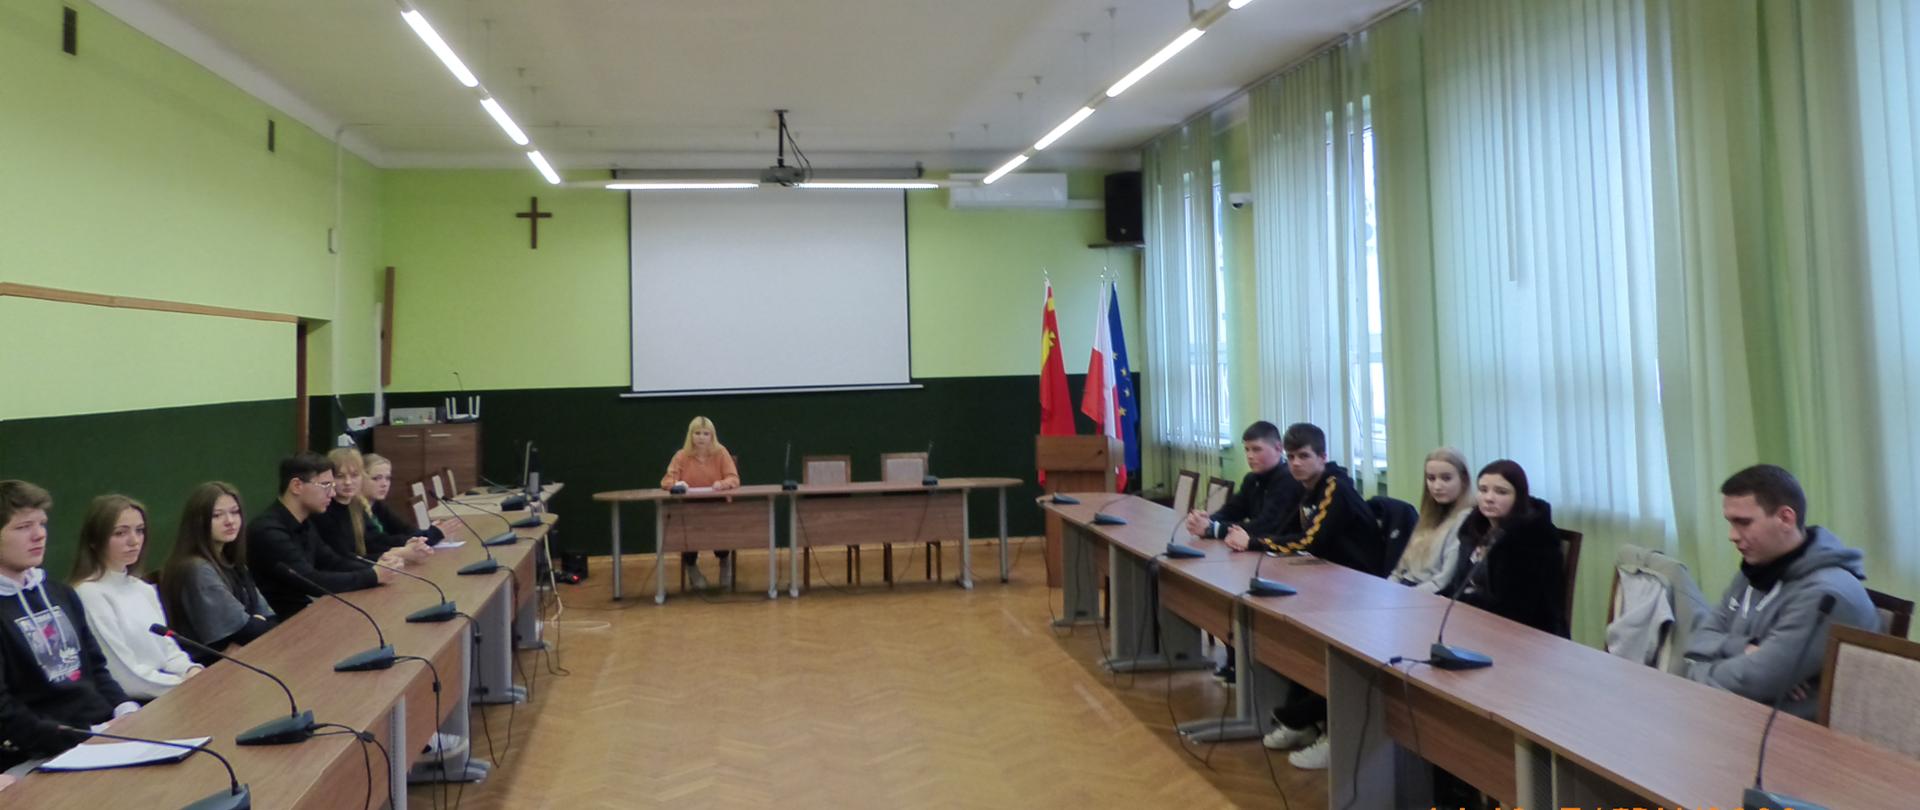 Członkowie Młodzieżowej Rady Powiatu Proszowickiego podczas sesji obradują przy stolach, na których znajdują się mikrofony. W tle zielona lamperia oraz stojak z flagami Polski, Unii Europejskiej i Powiatu Proszowickiego.